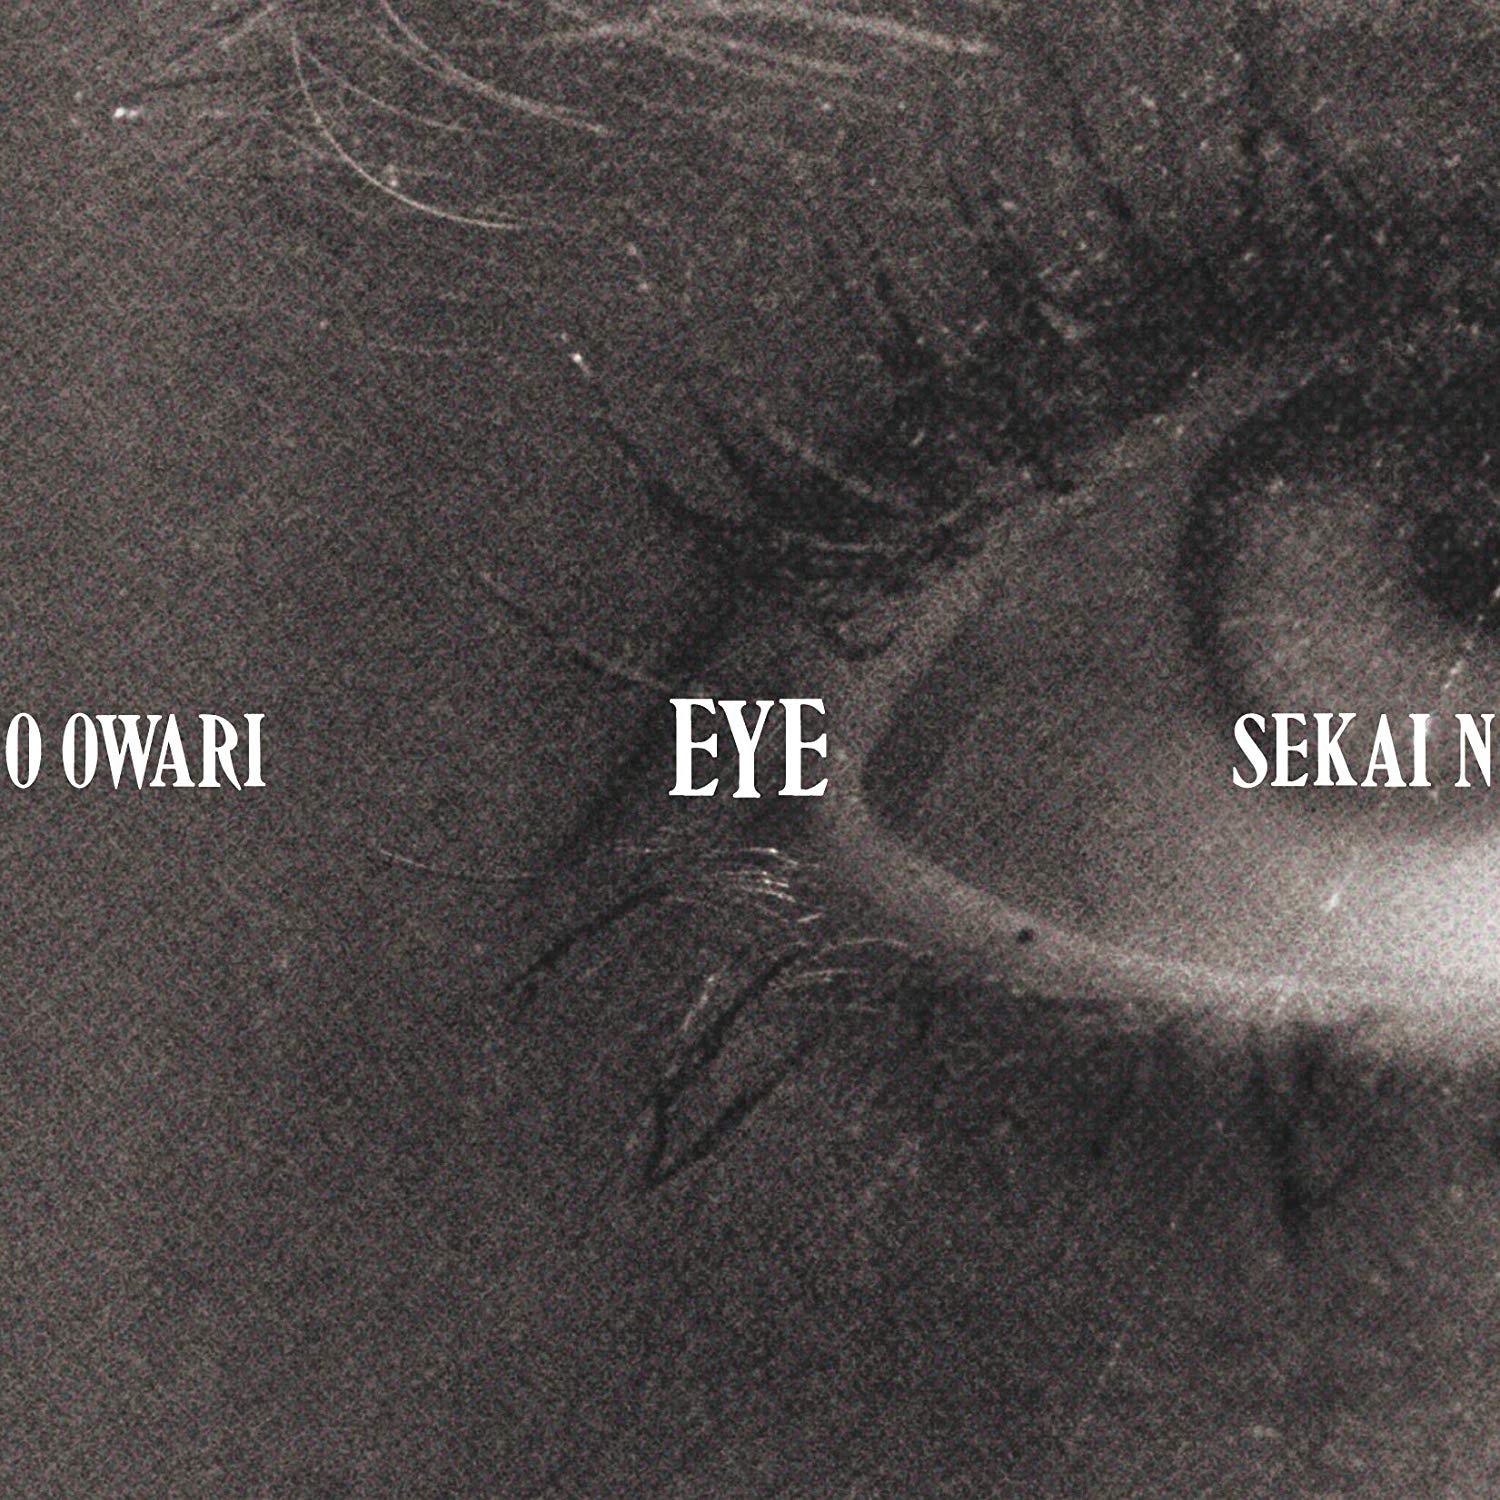 Sekai No Owari Eye Lip 目が語るものと口が語るもの 表裏一体のイメージのアルバム Mikiki